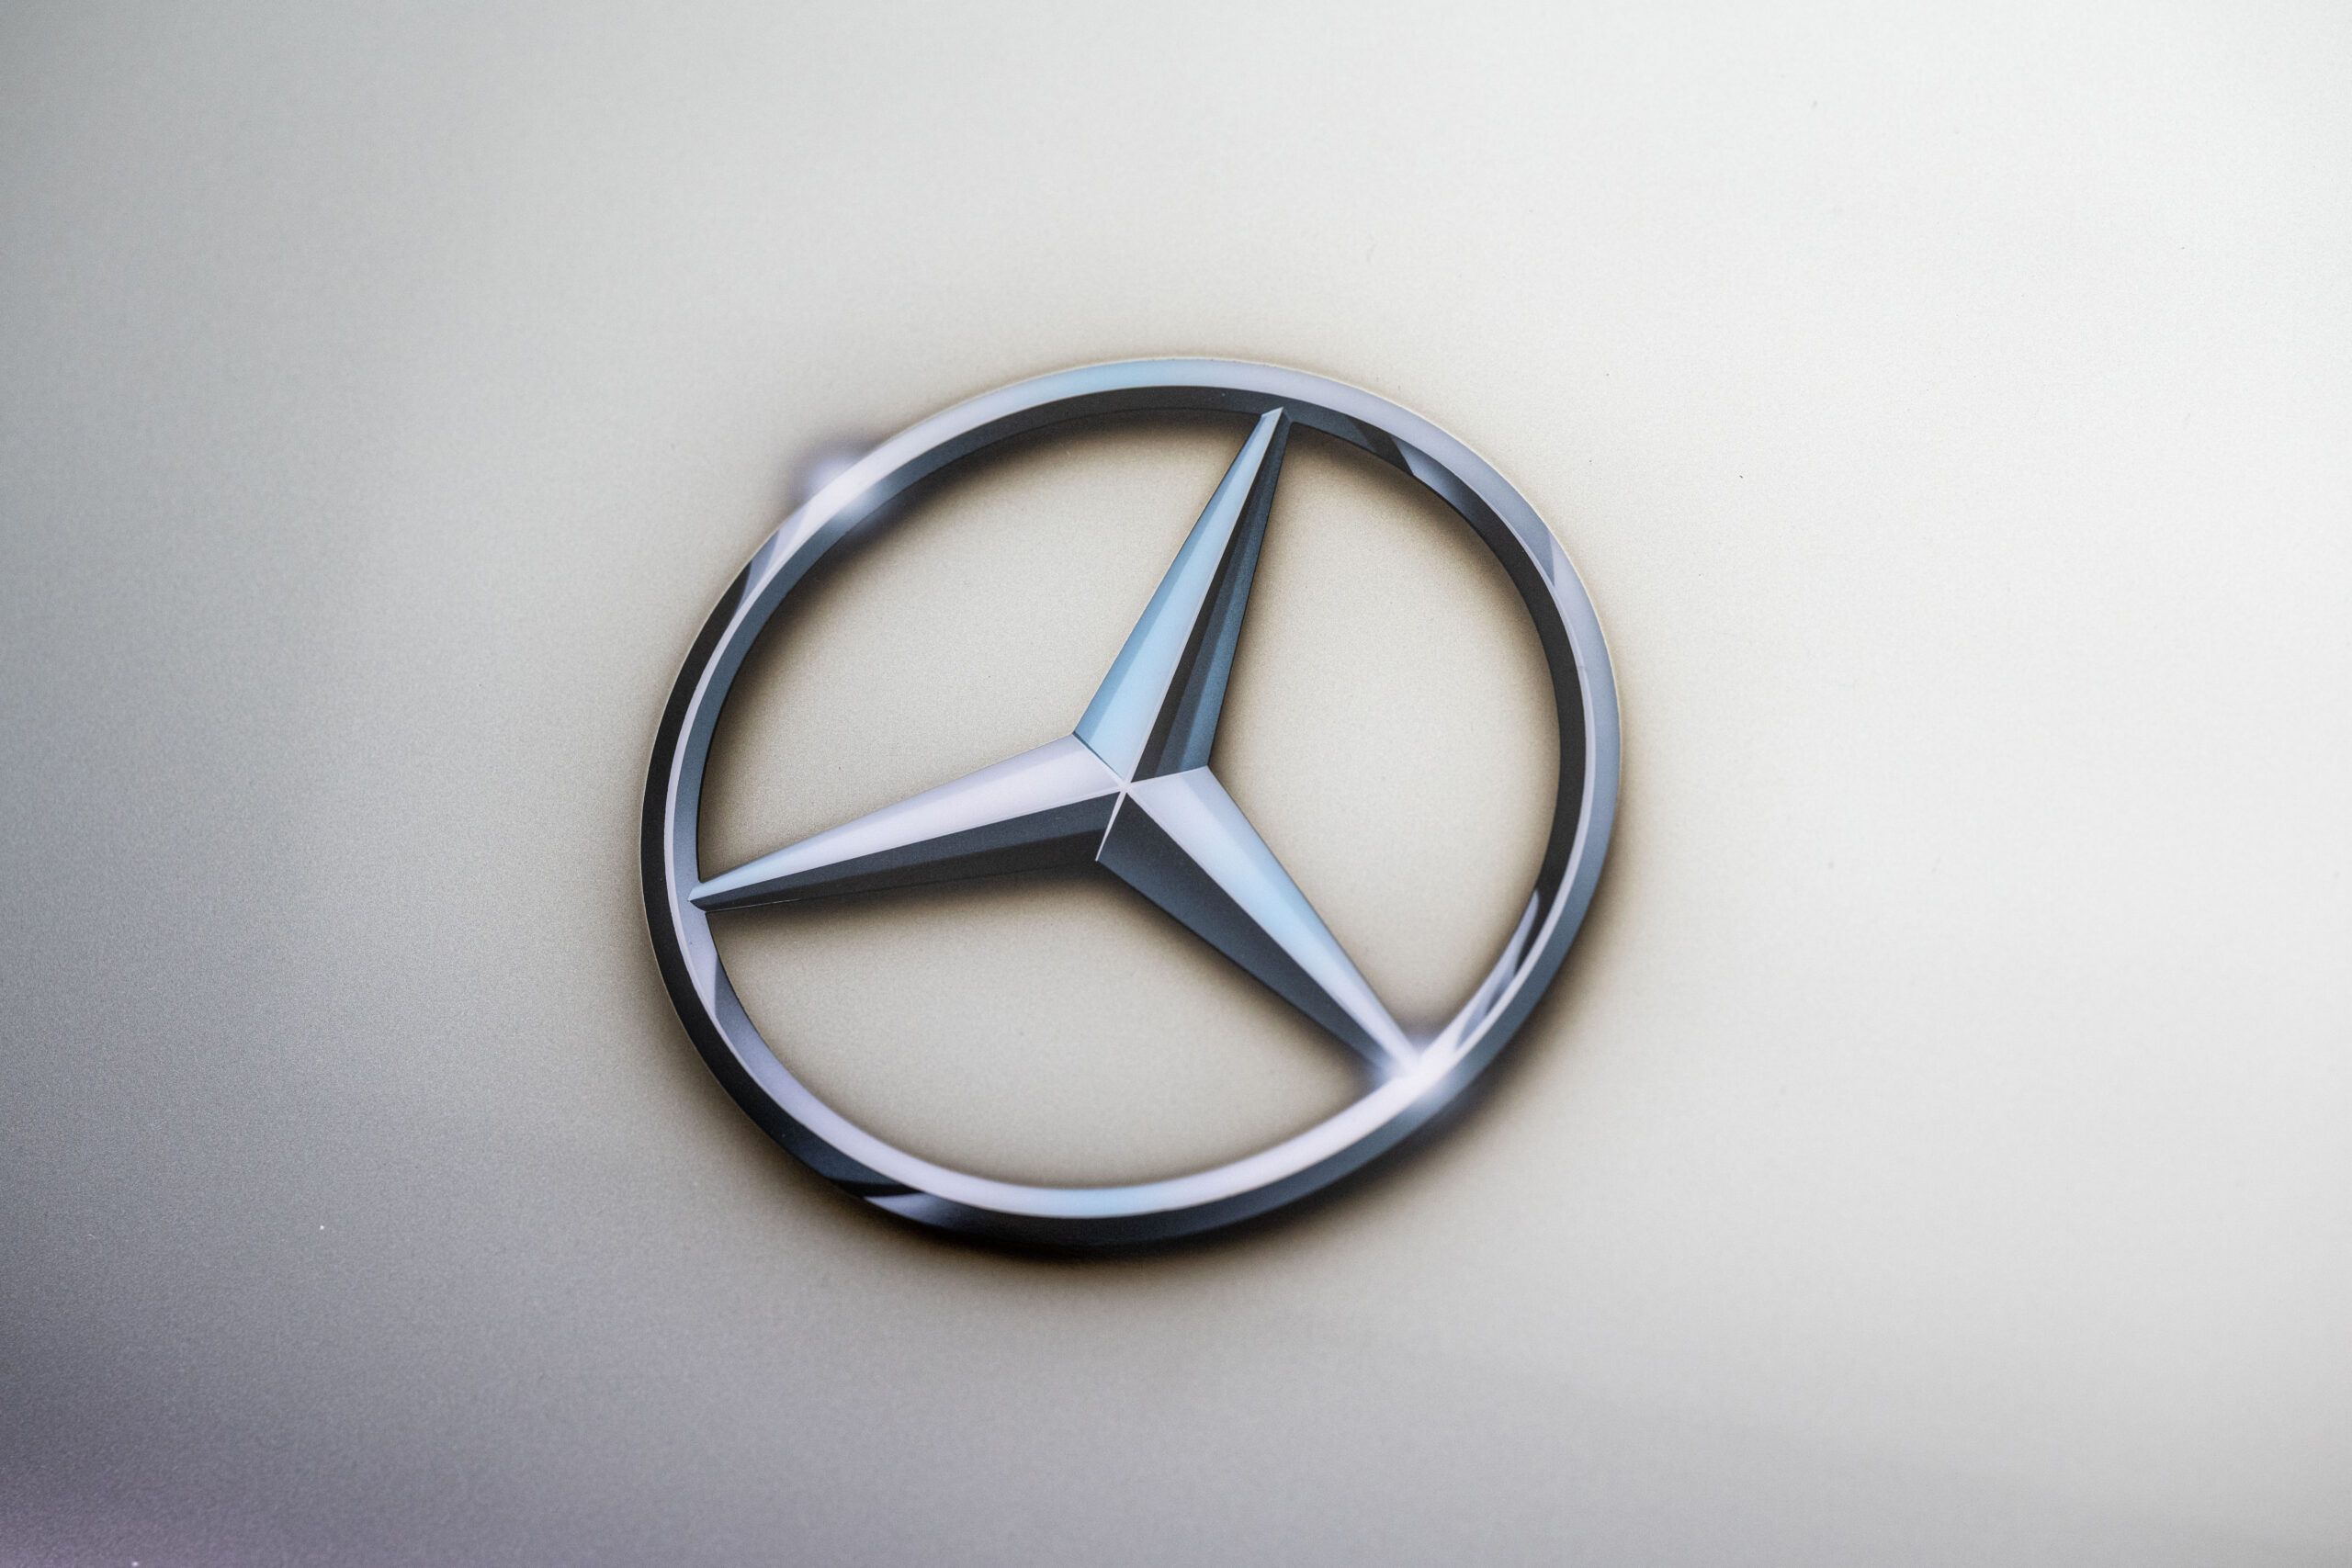 Na compra de veículos usados, portugueses preferem a Mercedes-Benz: saiba quais as restantes marcas mais procuradas